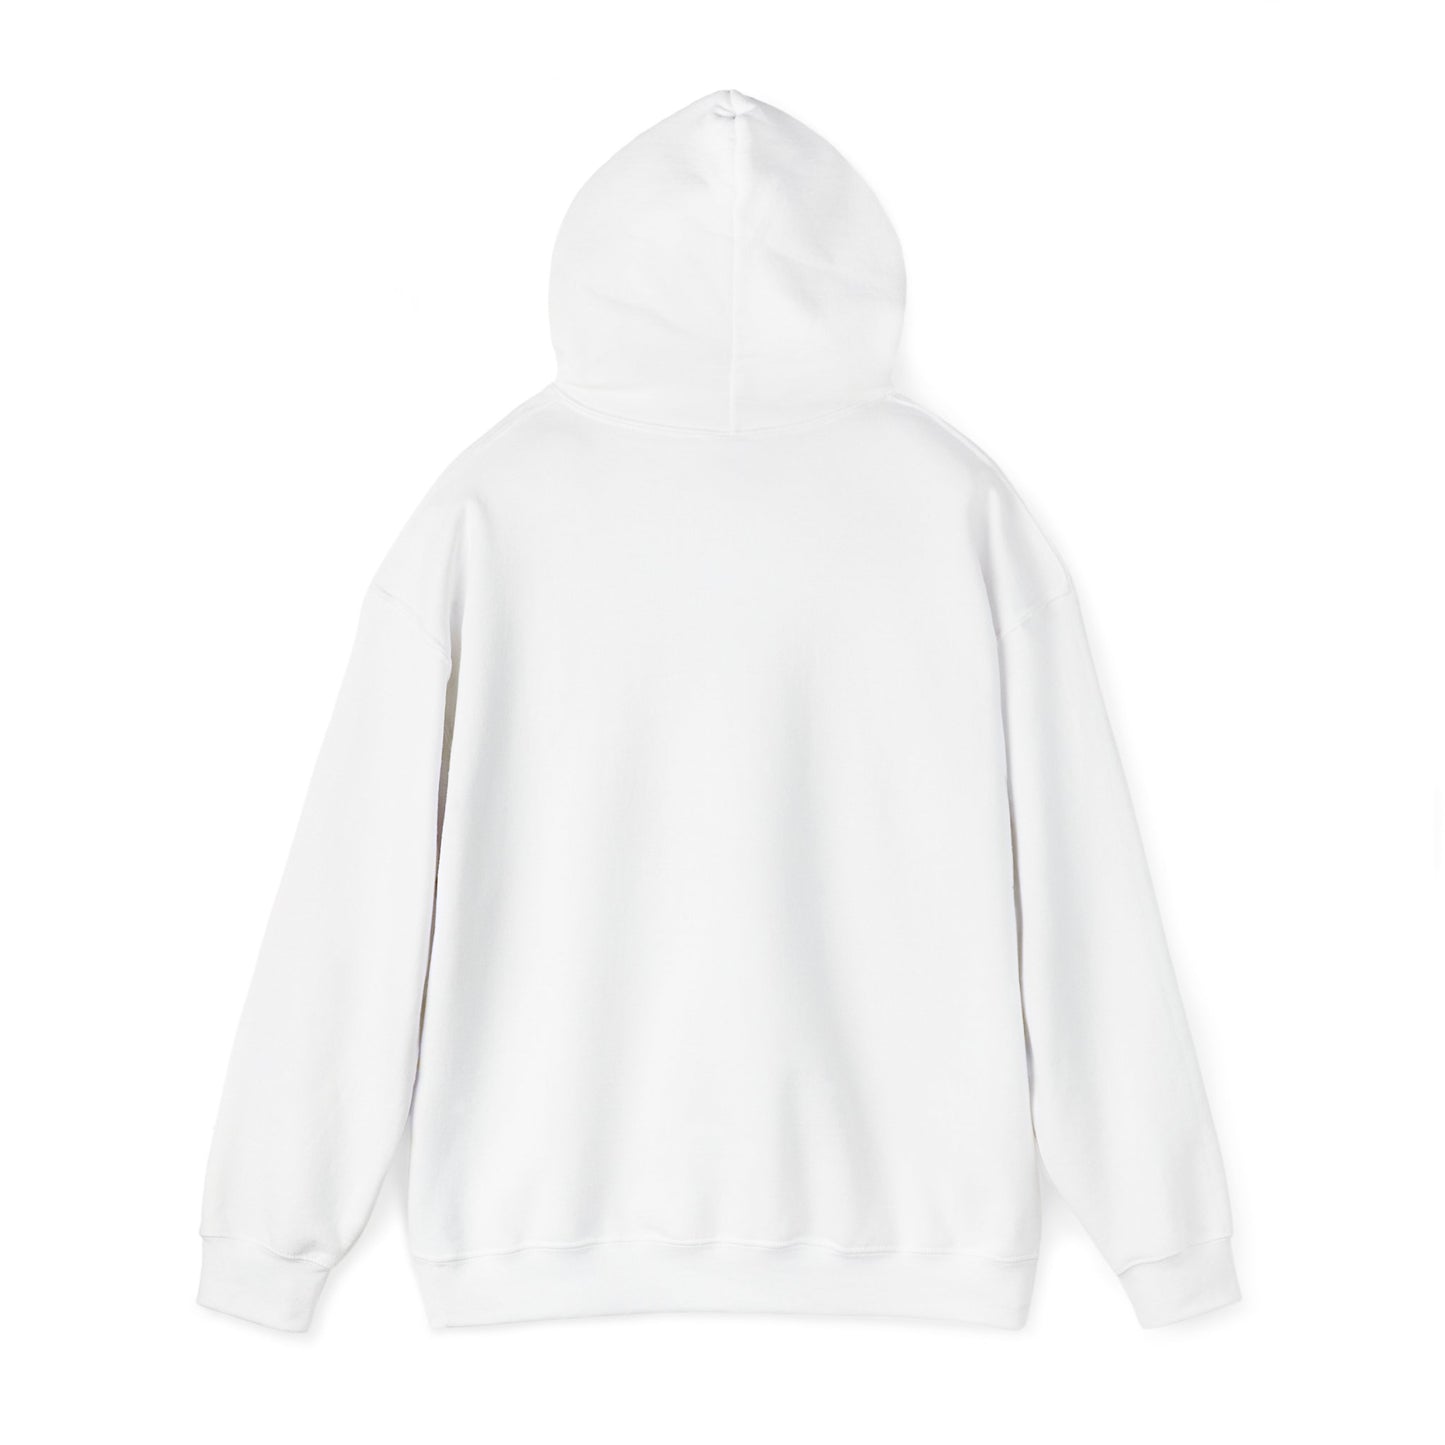 Queen's birthday -  Unisex Heavy Blend™ Hooded Sweatshirt